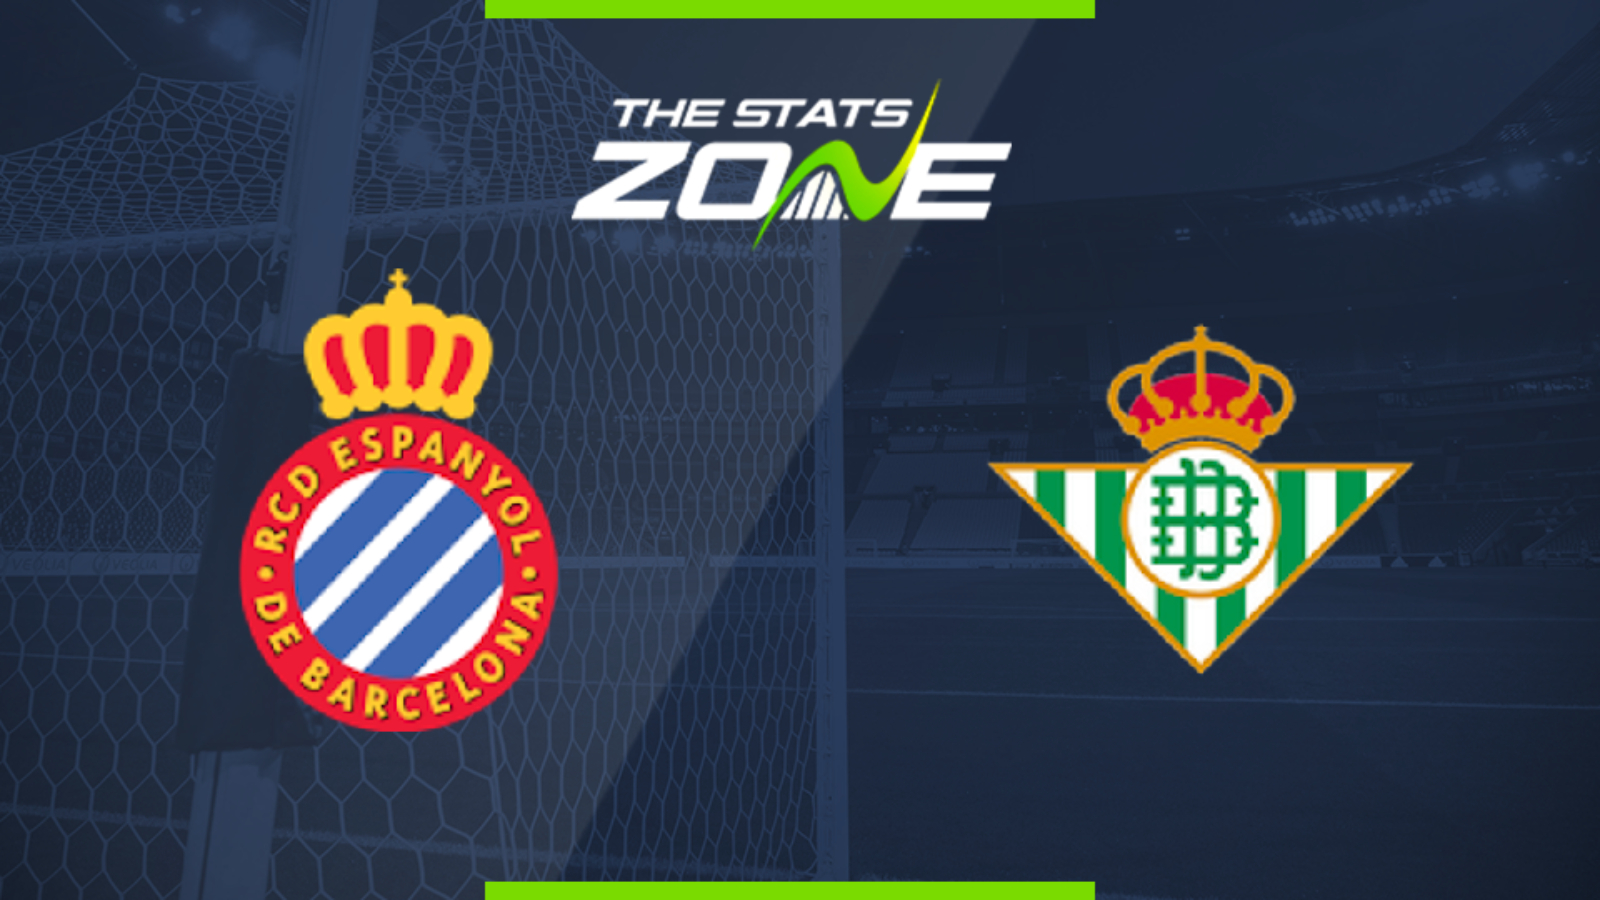 plan de estudios Colonos Palabra 2019-20 Spanish Primera – Espanyol vs Real Betis Preview & Prediction - The  Stats Zone